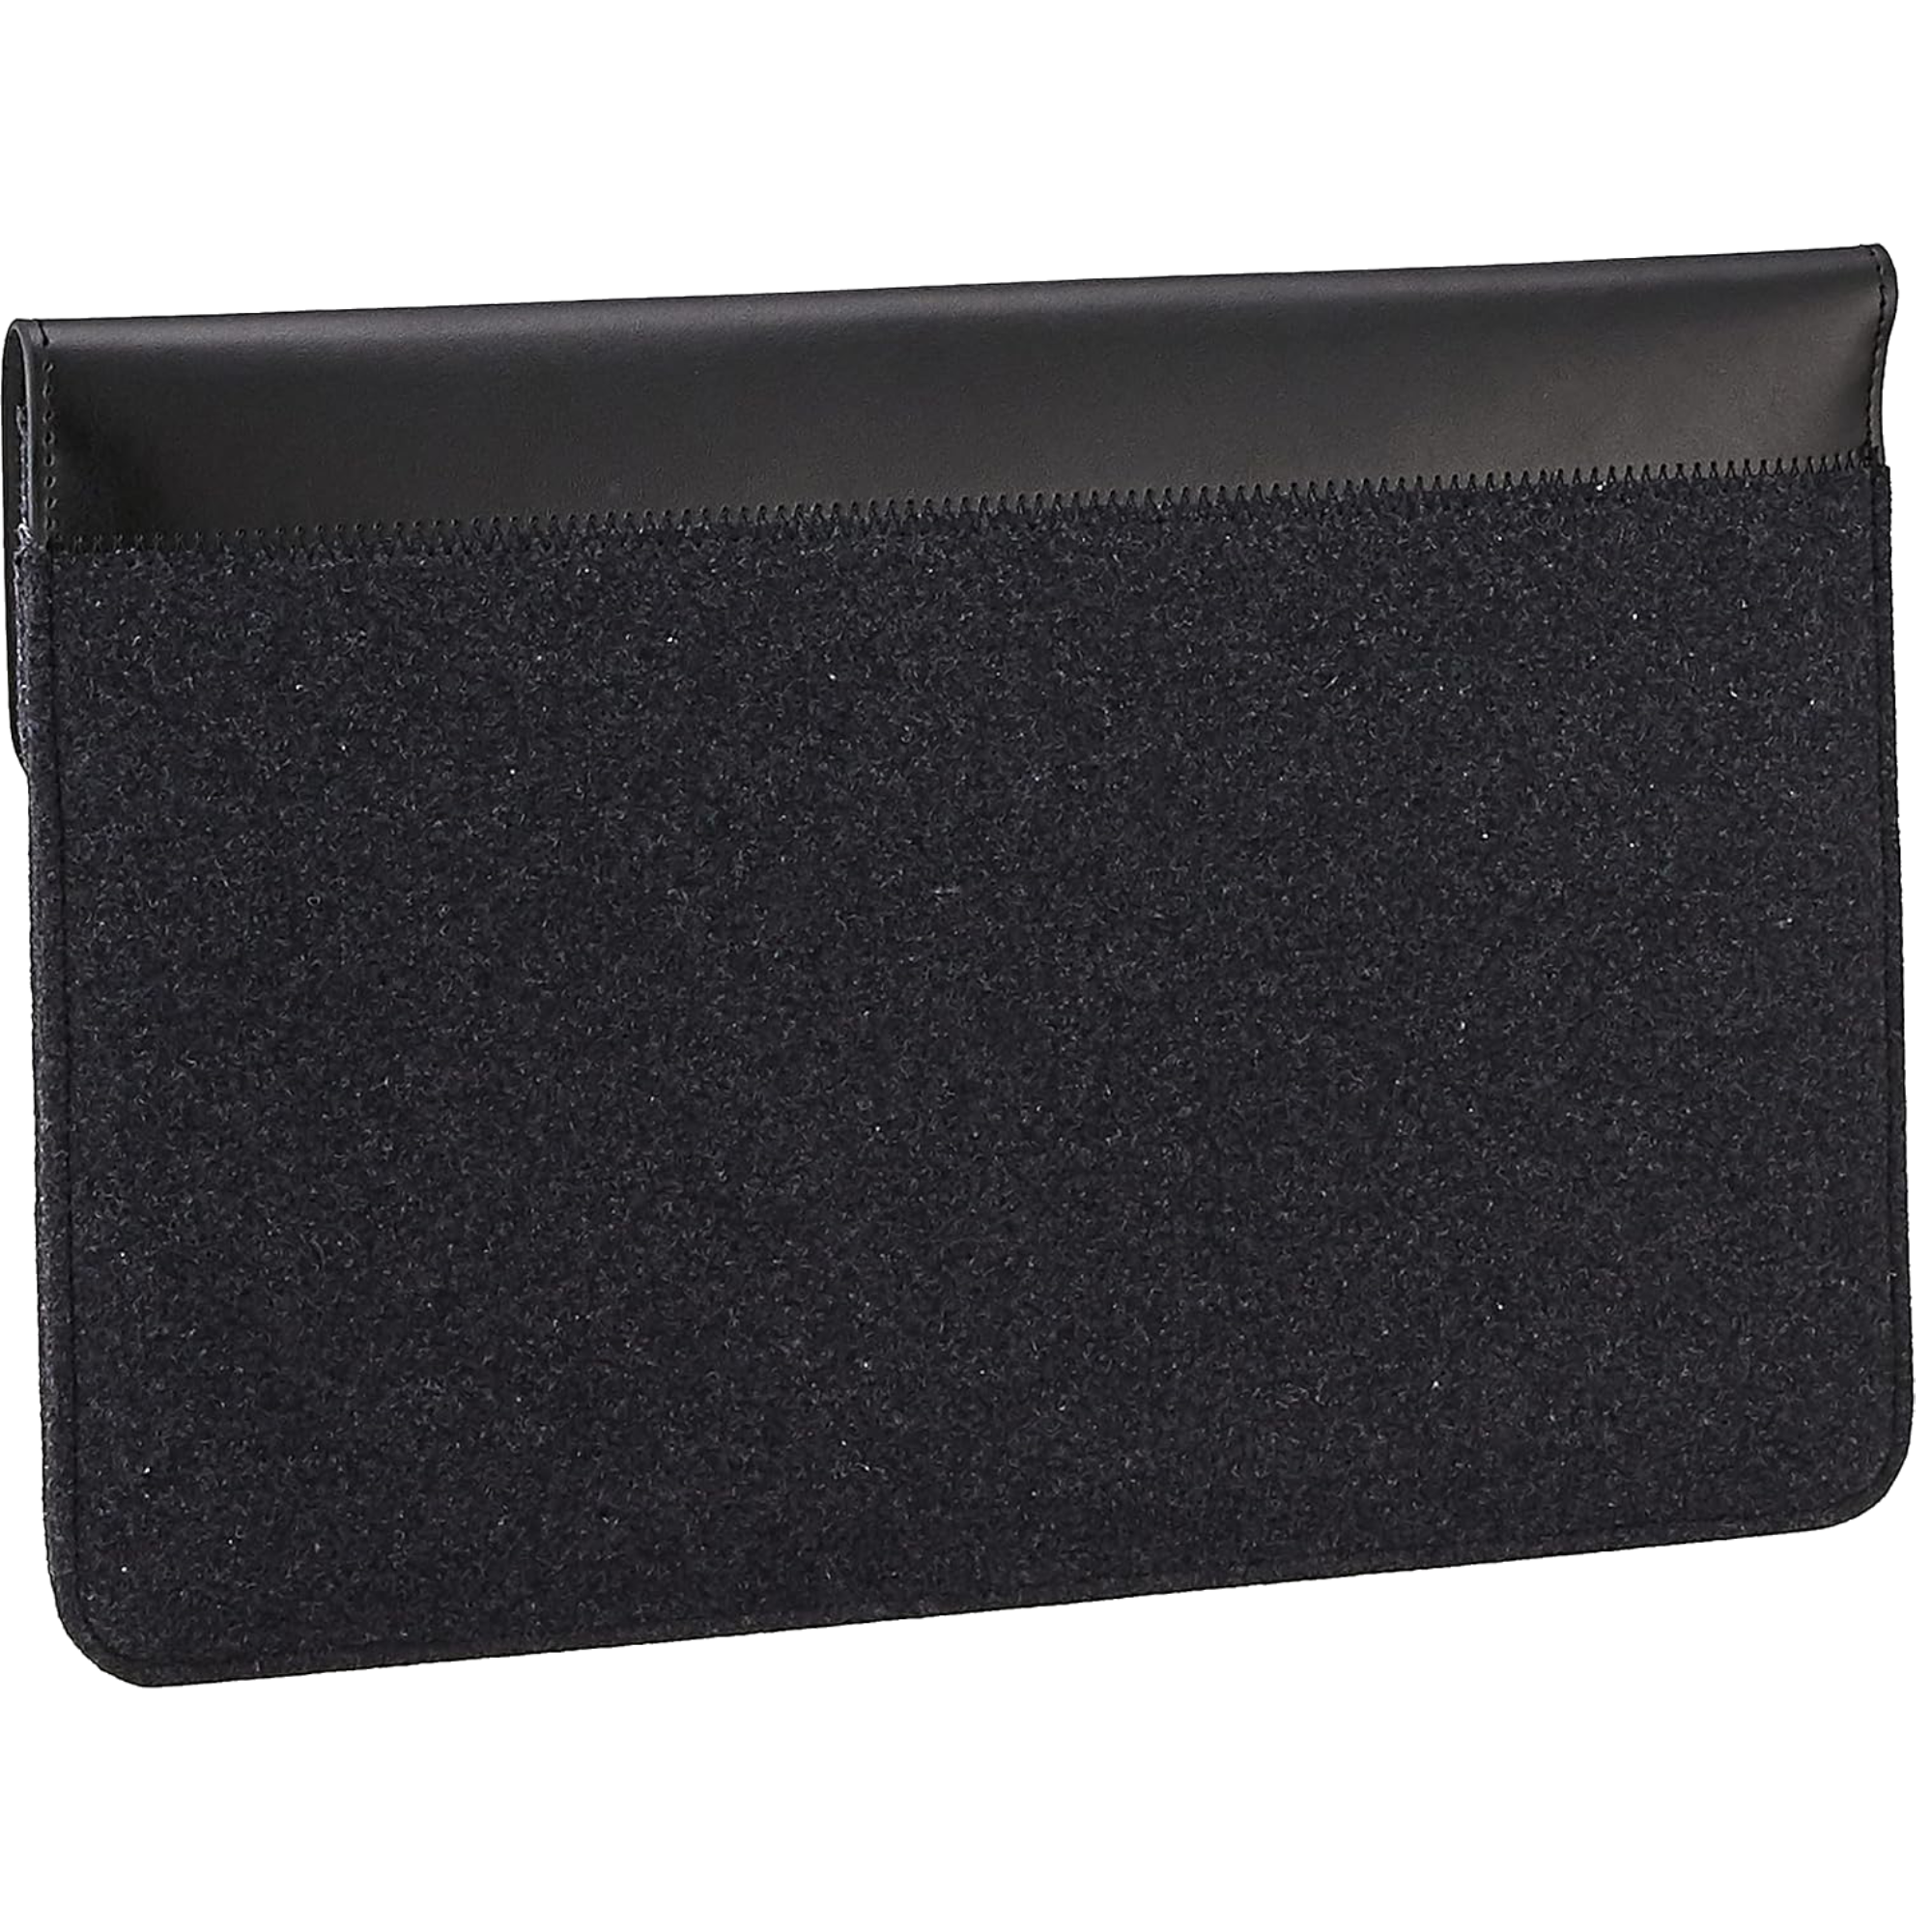 תיק מעטפה למחשב נייד 14 אינץ' Lenovo Yoga - צבע שחור